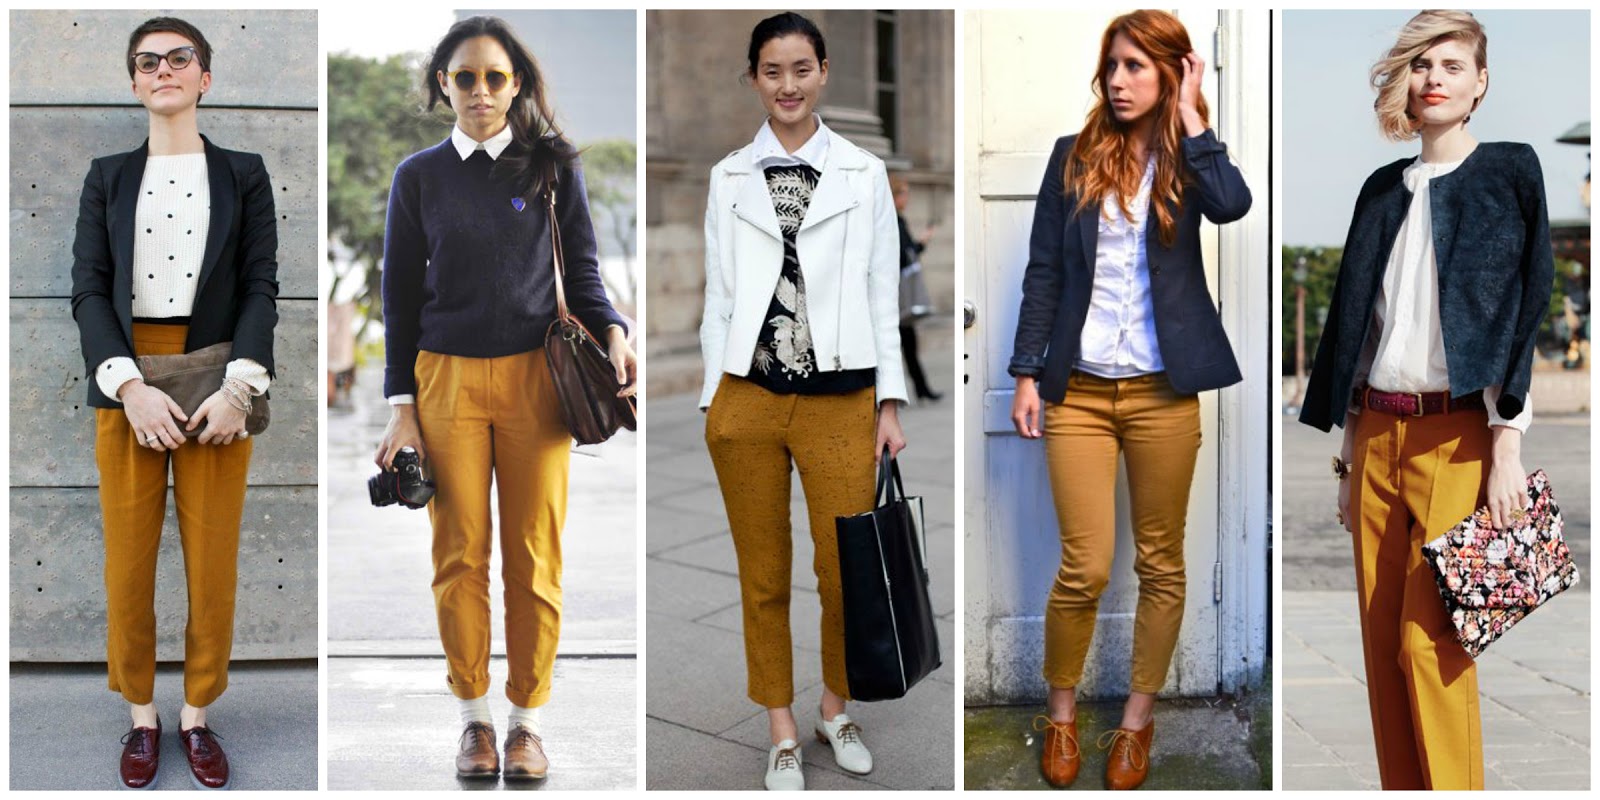 factor Cornualles Birmania Consultorio de estilo: ¿cómo combinar un pantalón mostaza?